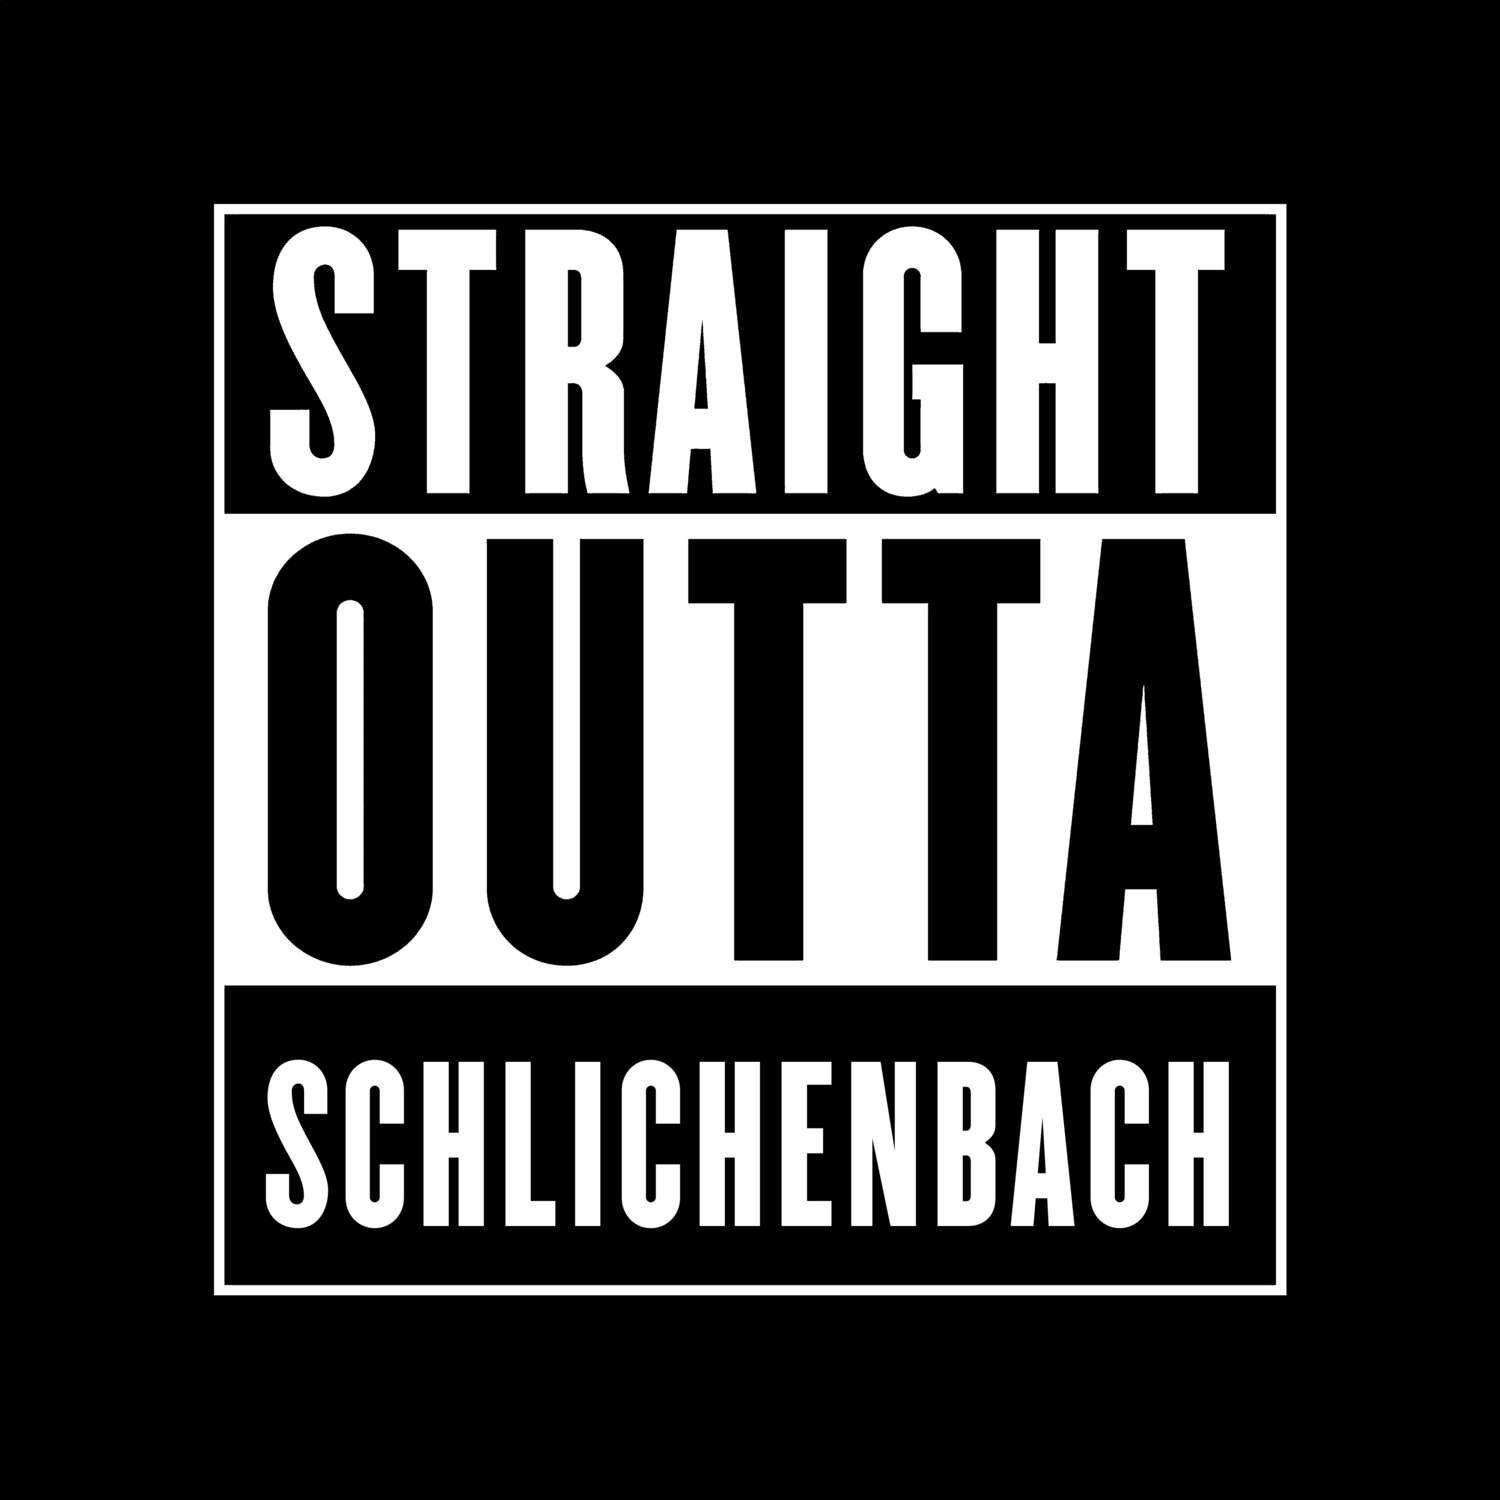 Schlichenbach T-Shirt »Straight Outta«